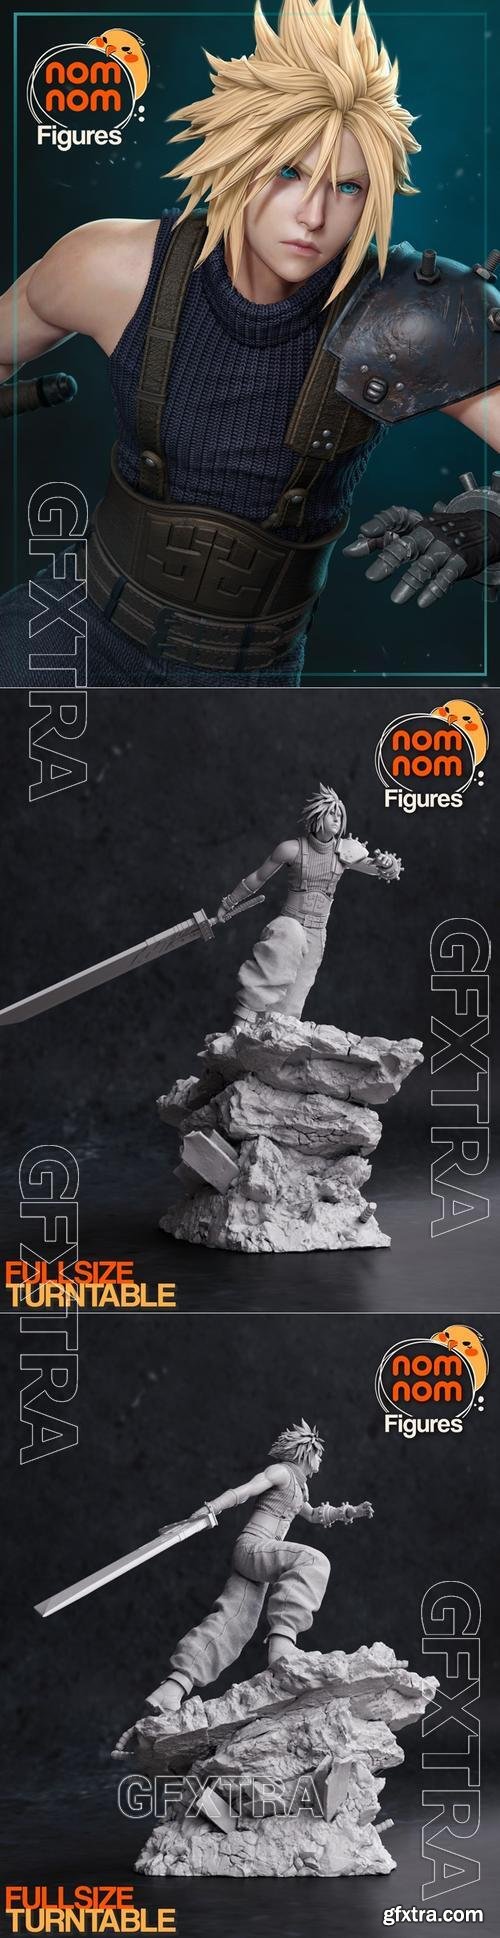 NomNom Figures - Cloud Strife from Final Fantasy VII &ndash; 3D Print Model